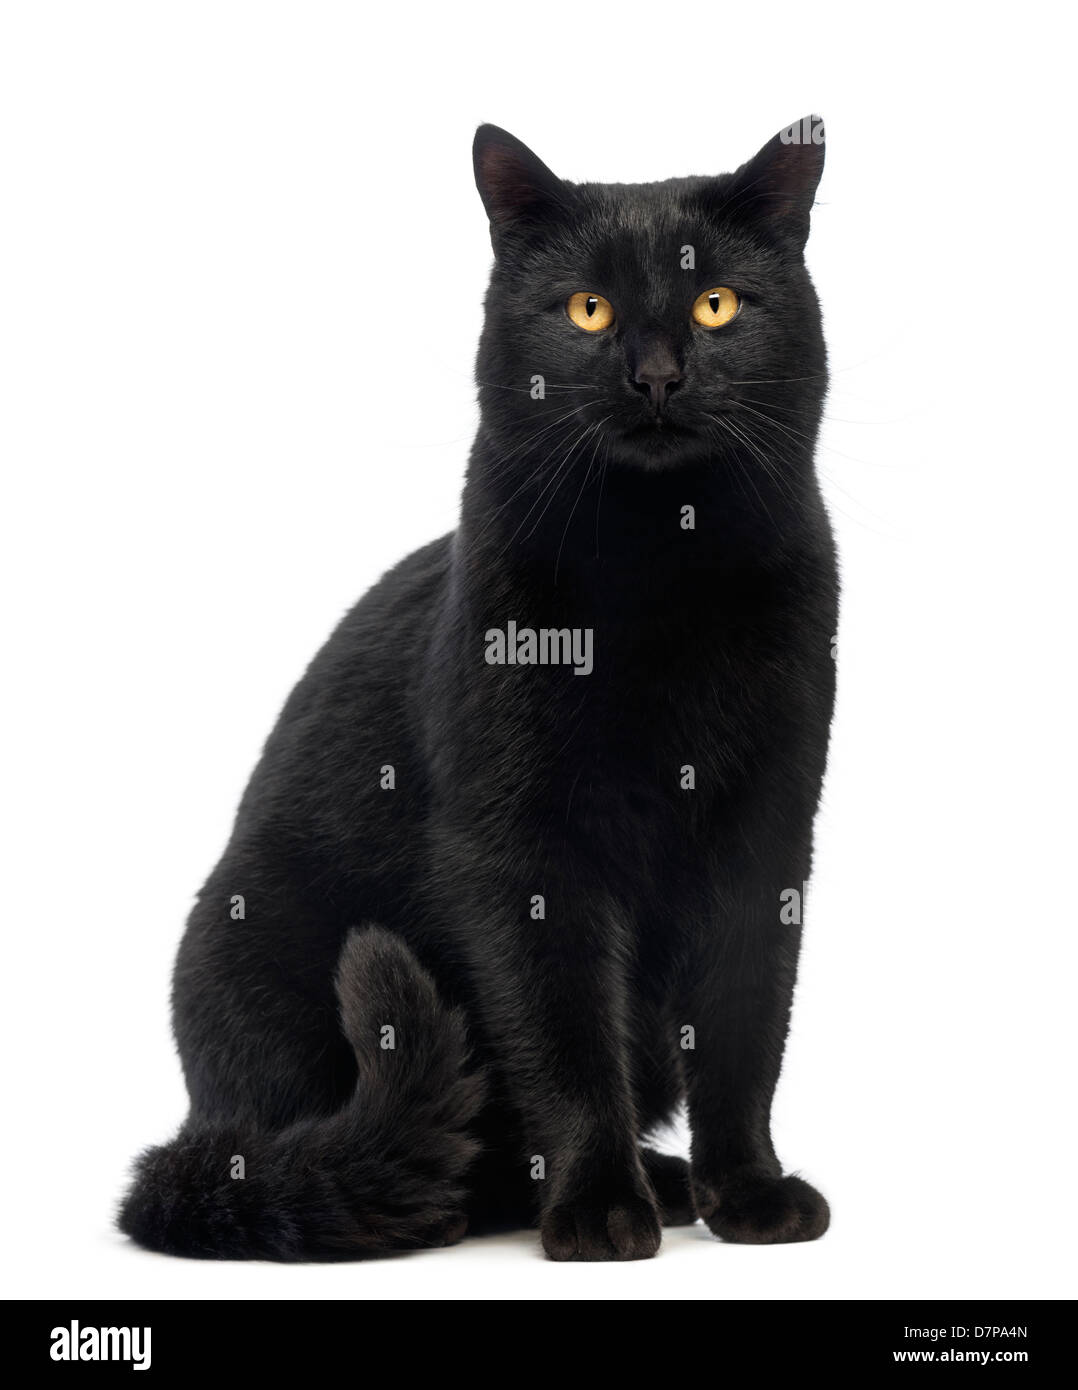 Gatto nero seduto e guardando la telecamera contro uno sfondo bianco Foto Stock